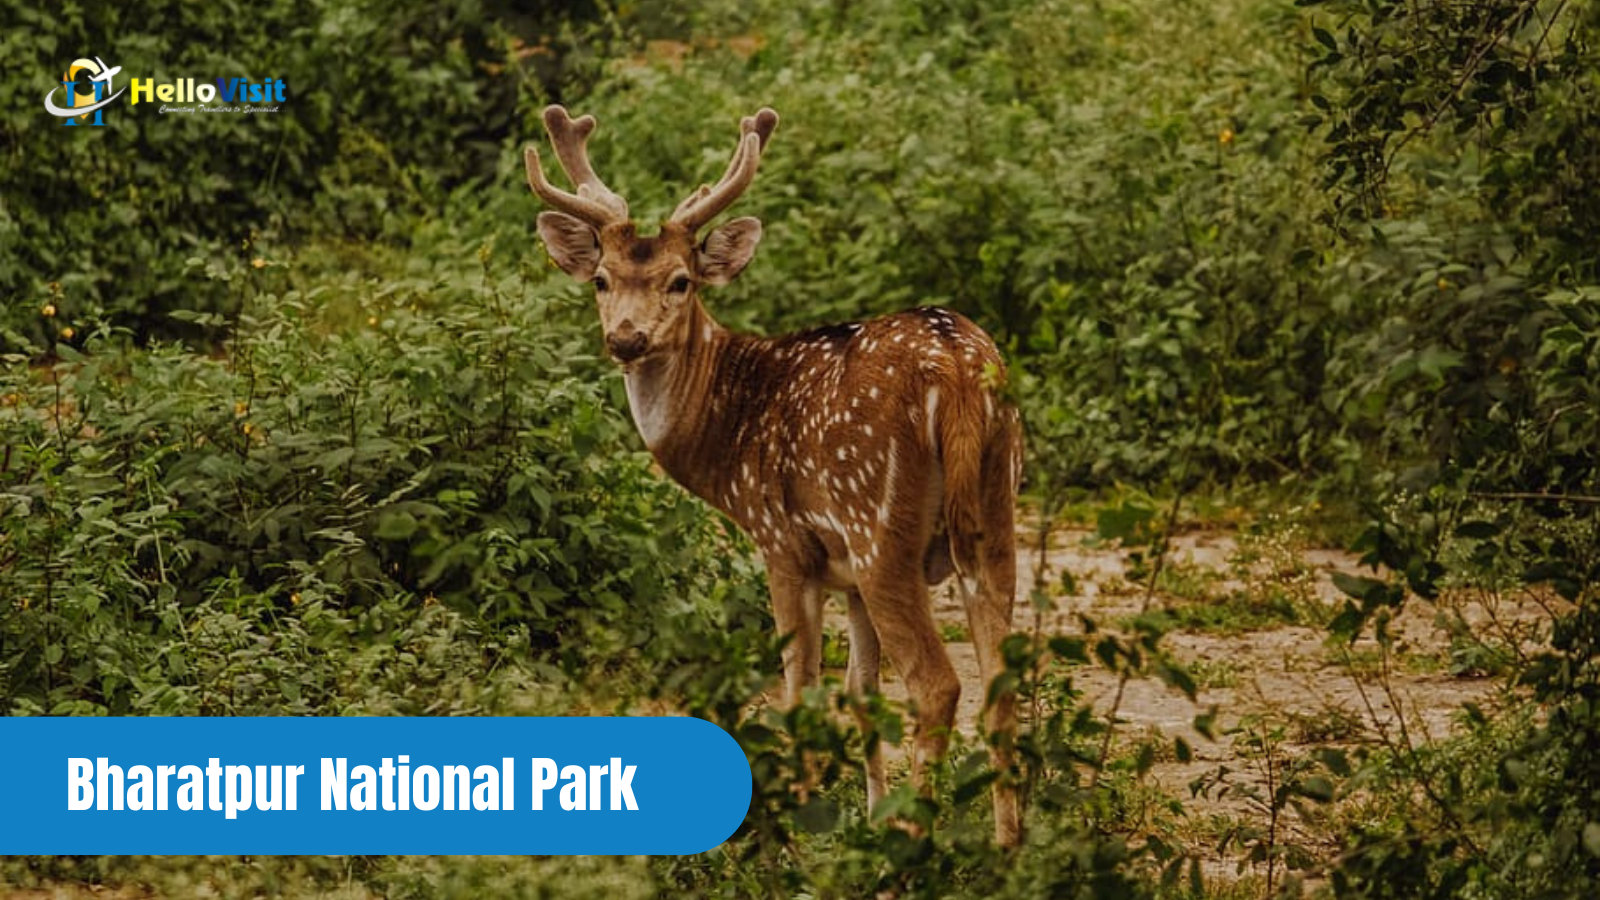 Bharatpur National Park